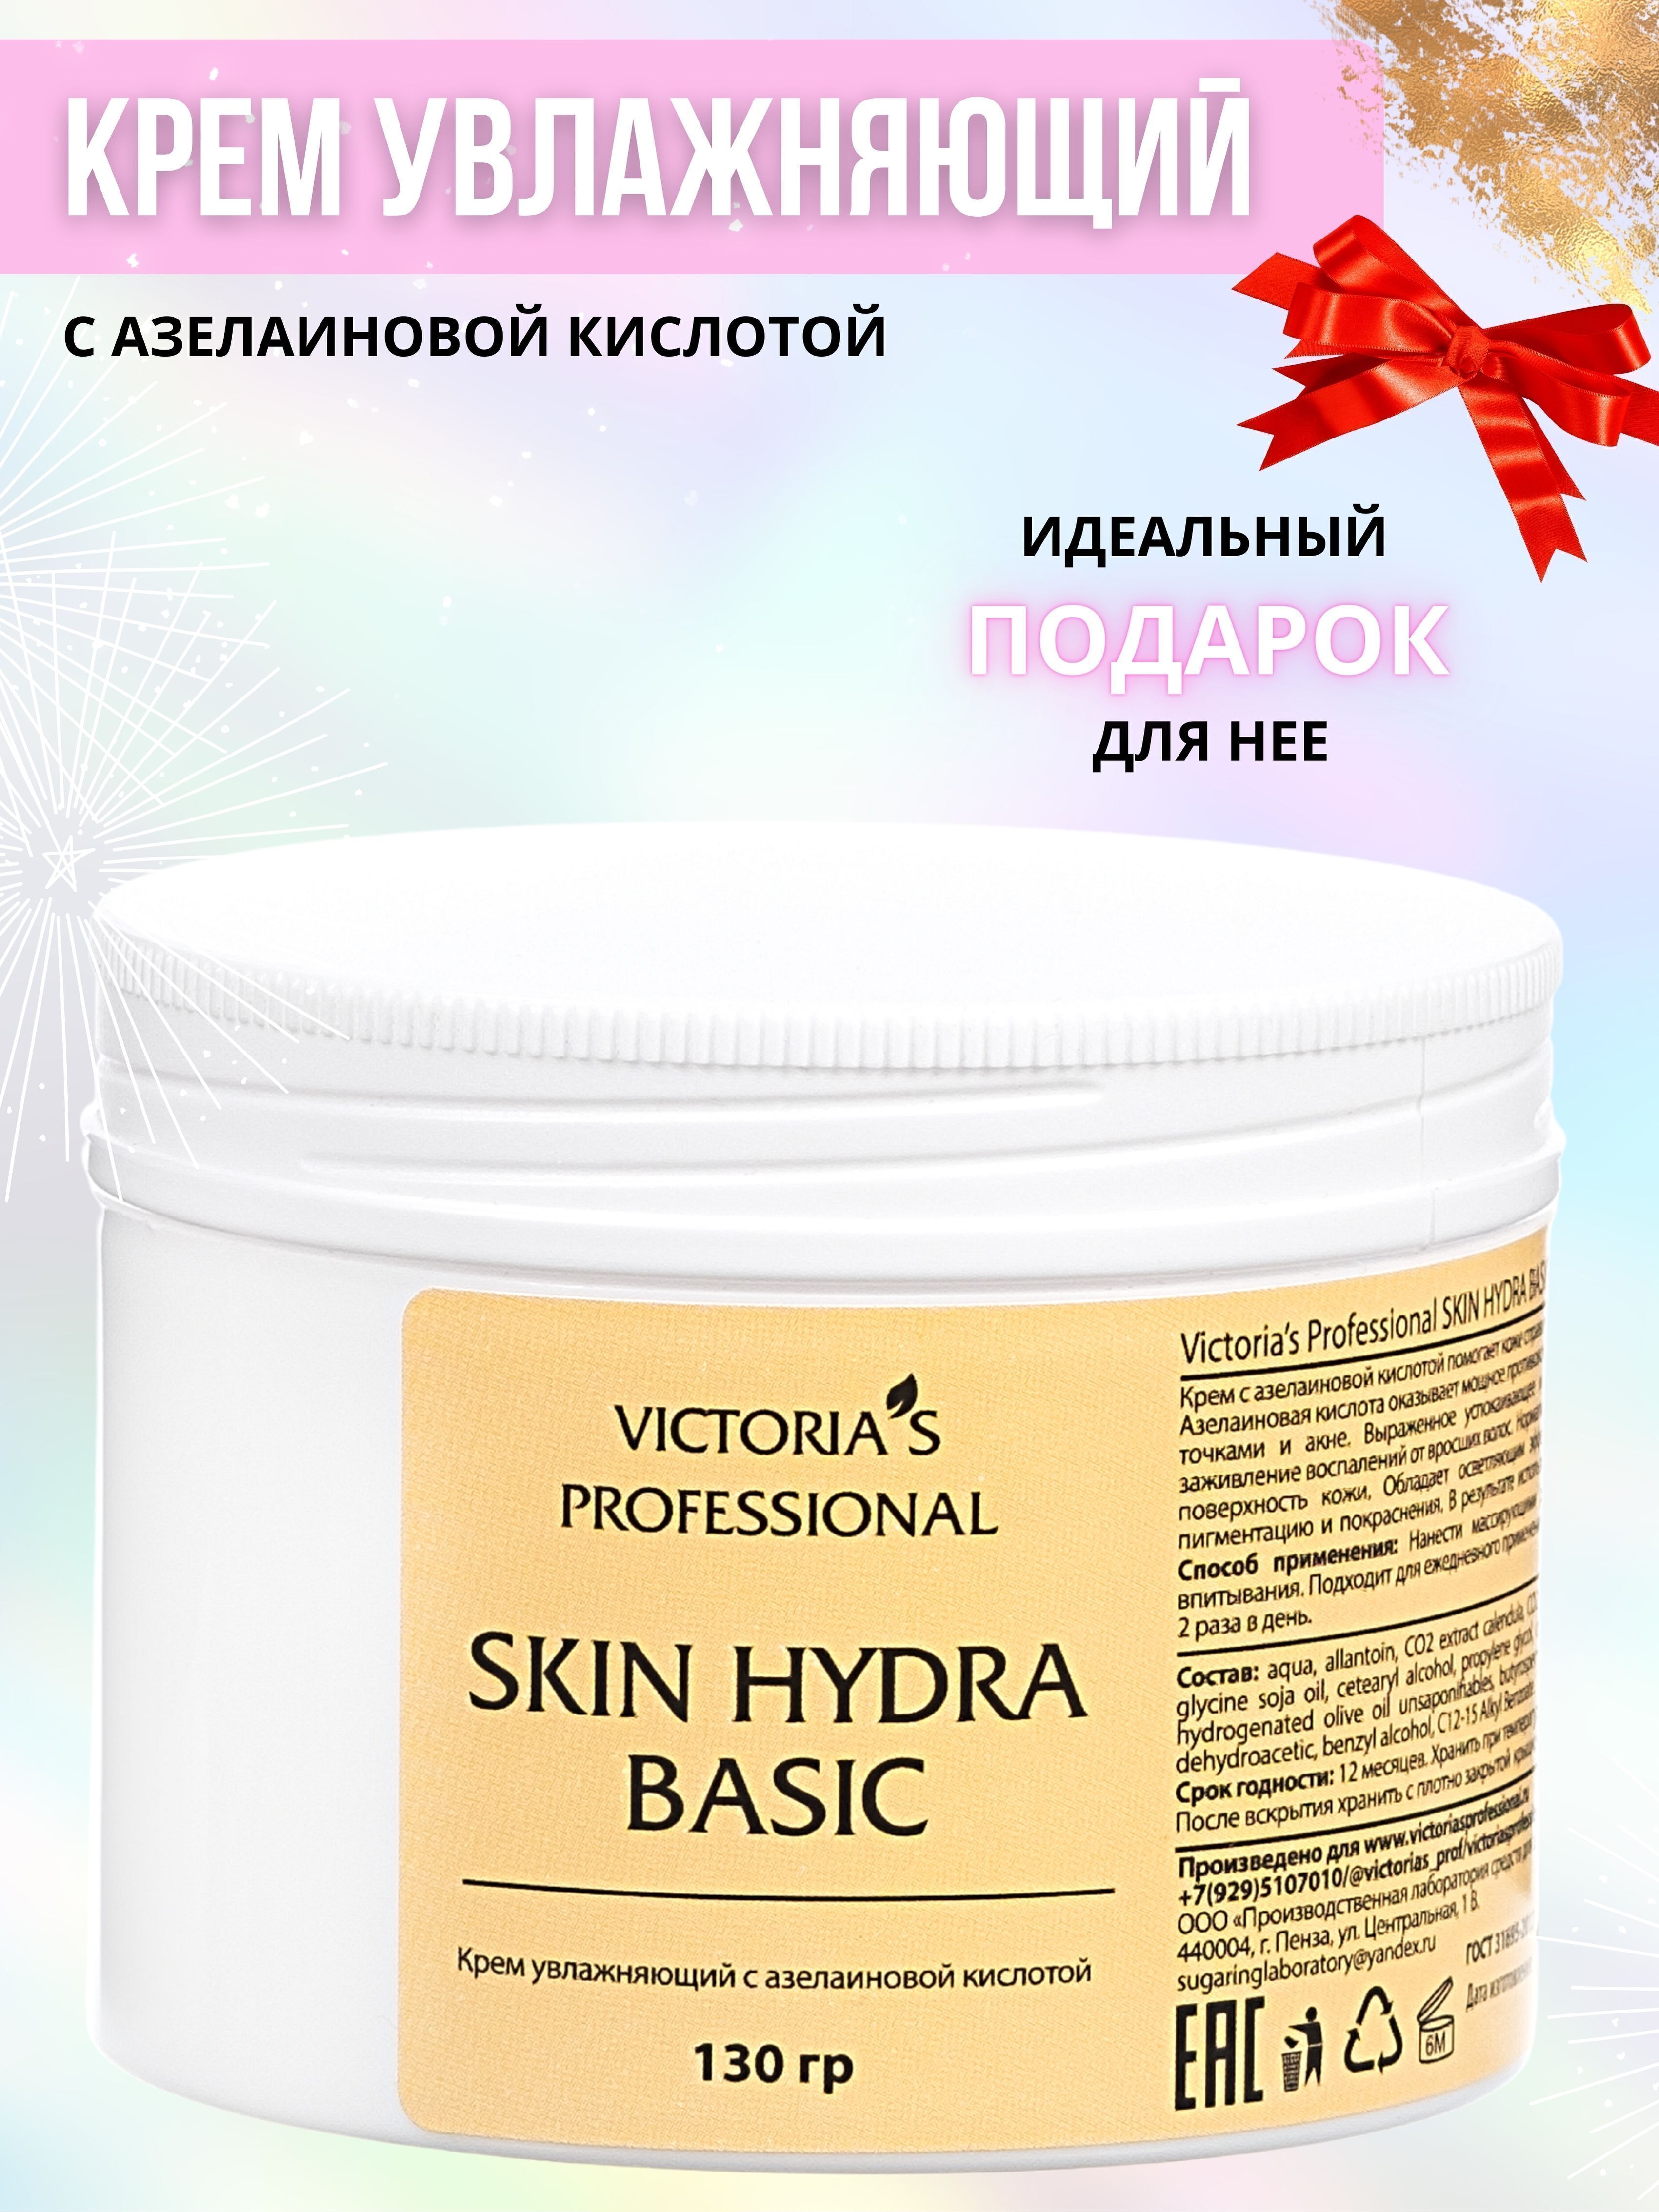 Skin hydra basic victoria отзывы как выйти в тор с обычного браузера hydra2web